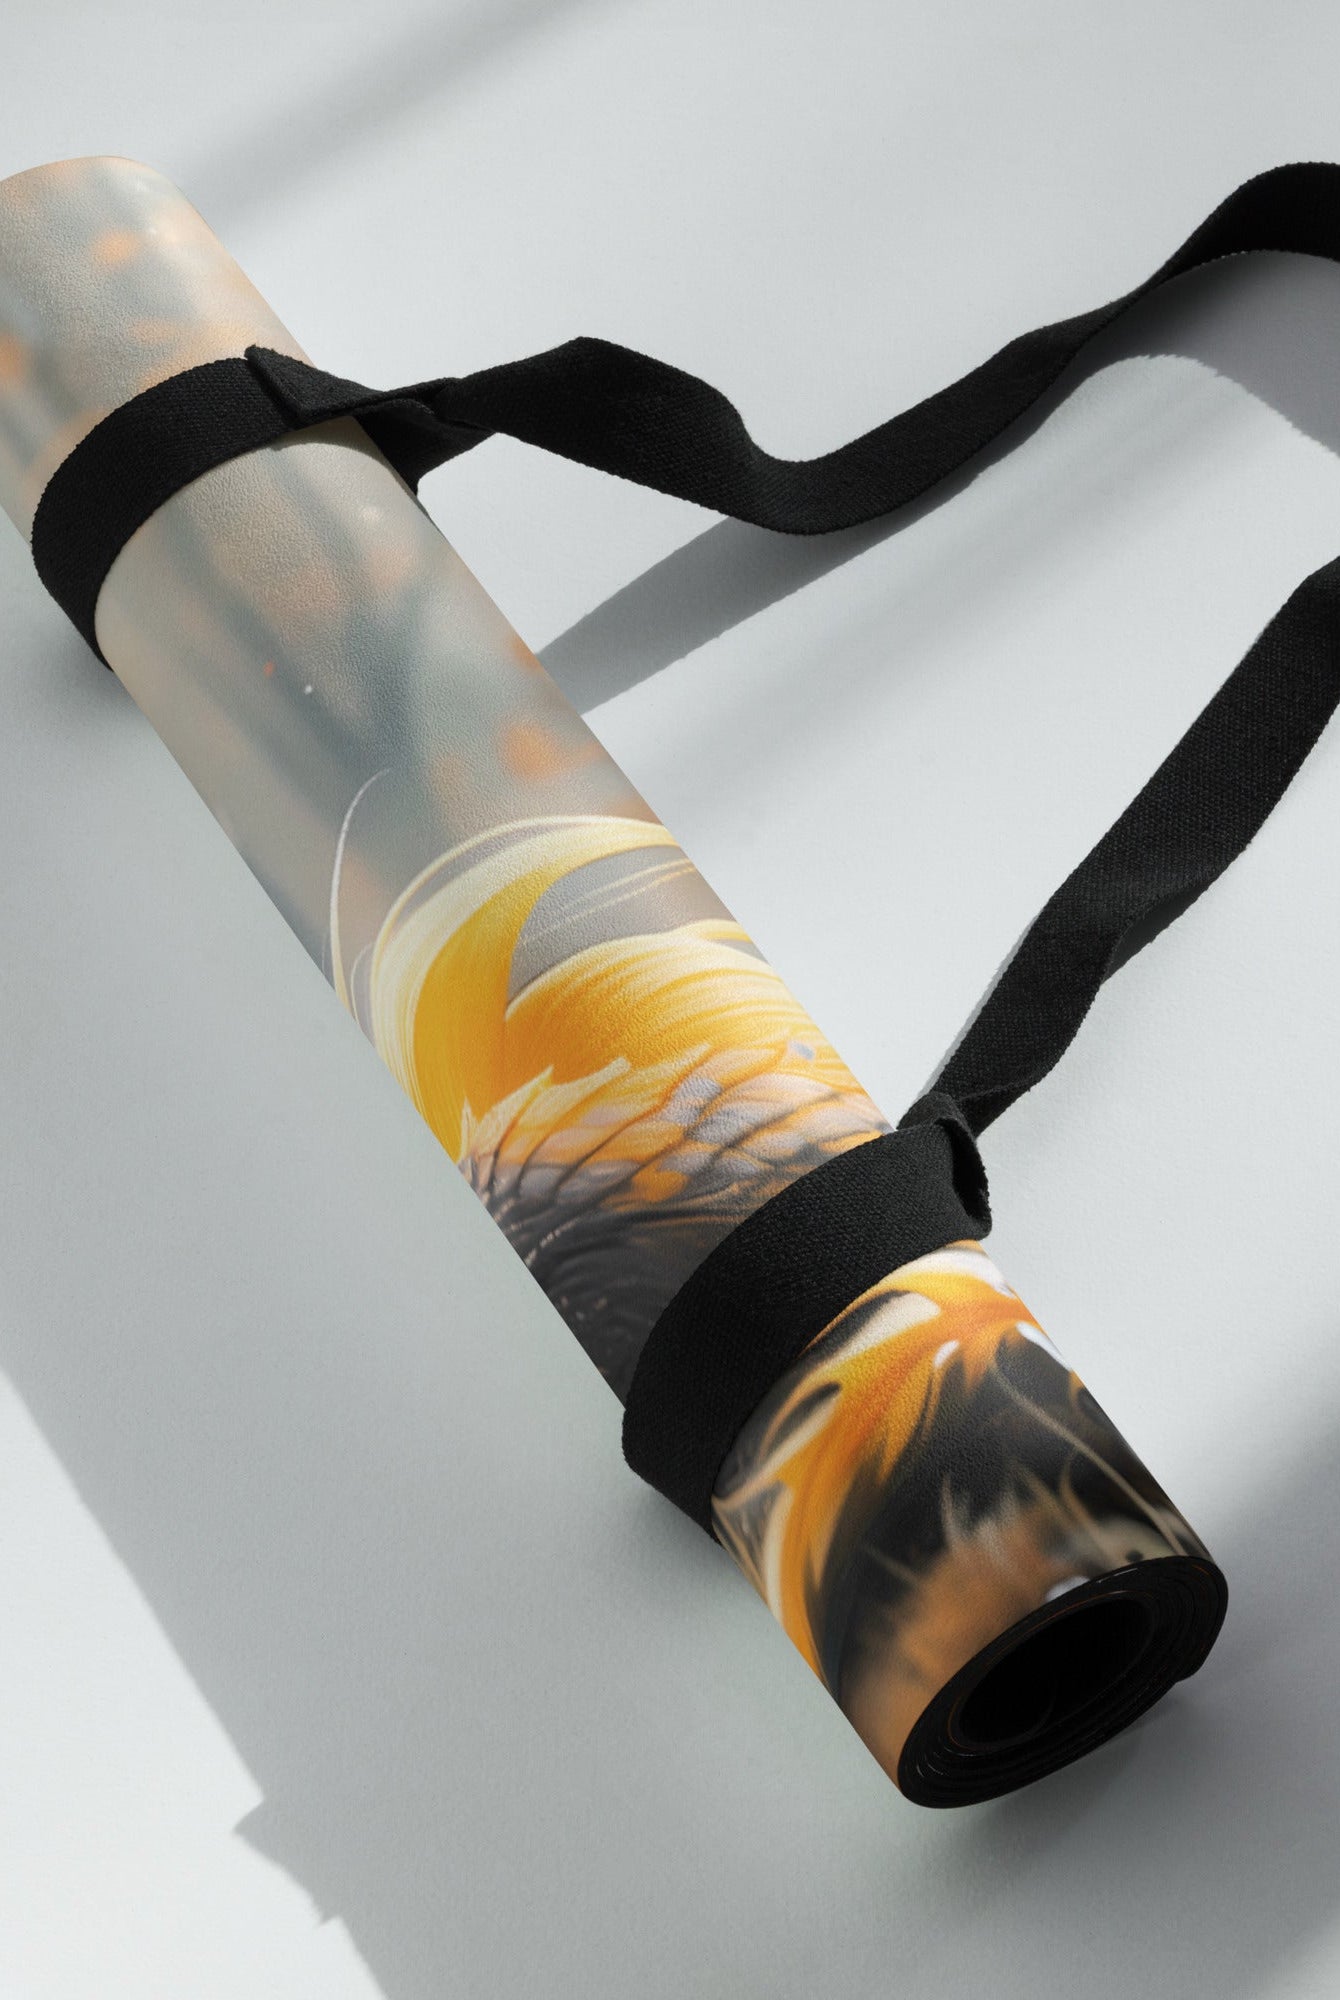 Solara Nightshade Yoga Mat - Yoga Mat - DRAGON FOXX™ - Solara Nightshade Yoga Mat - 3328032_16714 - Yellow - 24″ × 68″ (61 cm × 173 cm) - Accessories - Animal Art - Animal Art Mats